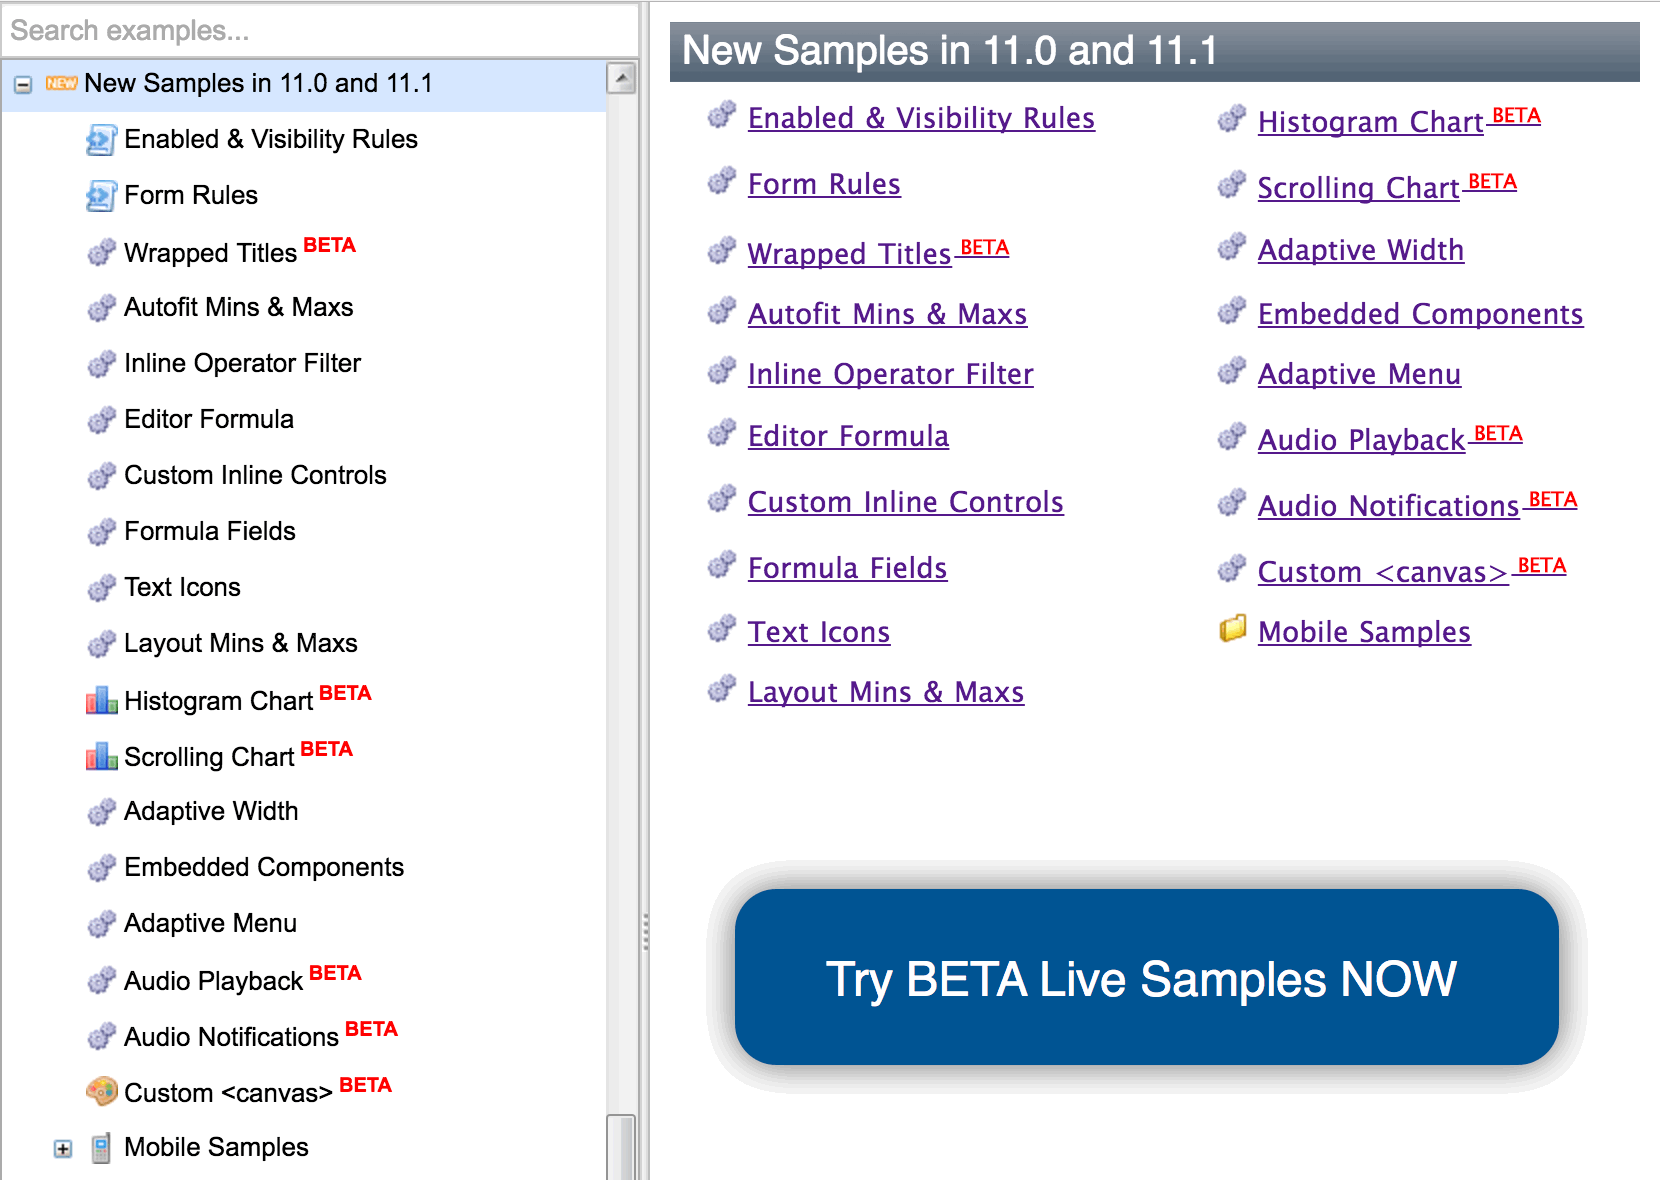 beta-samples-11-1